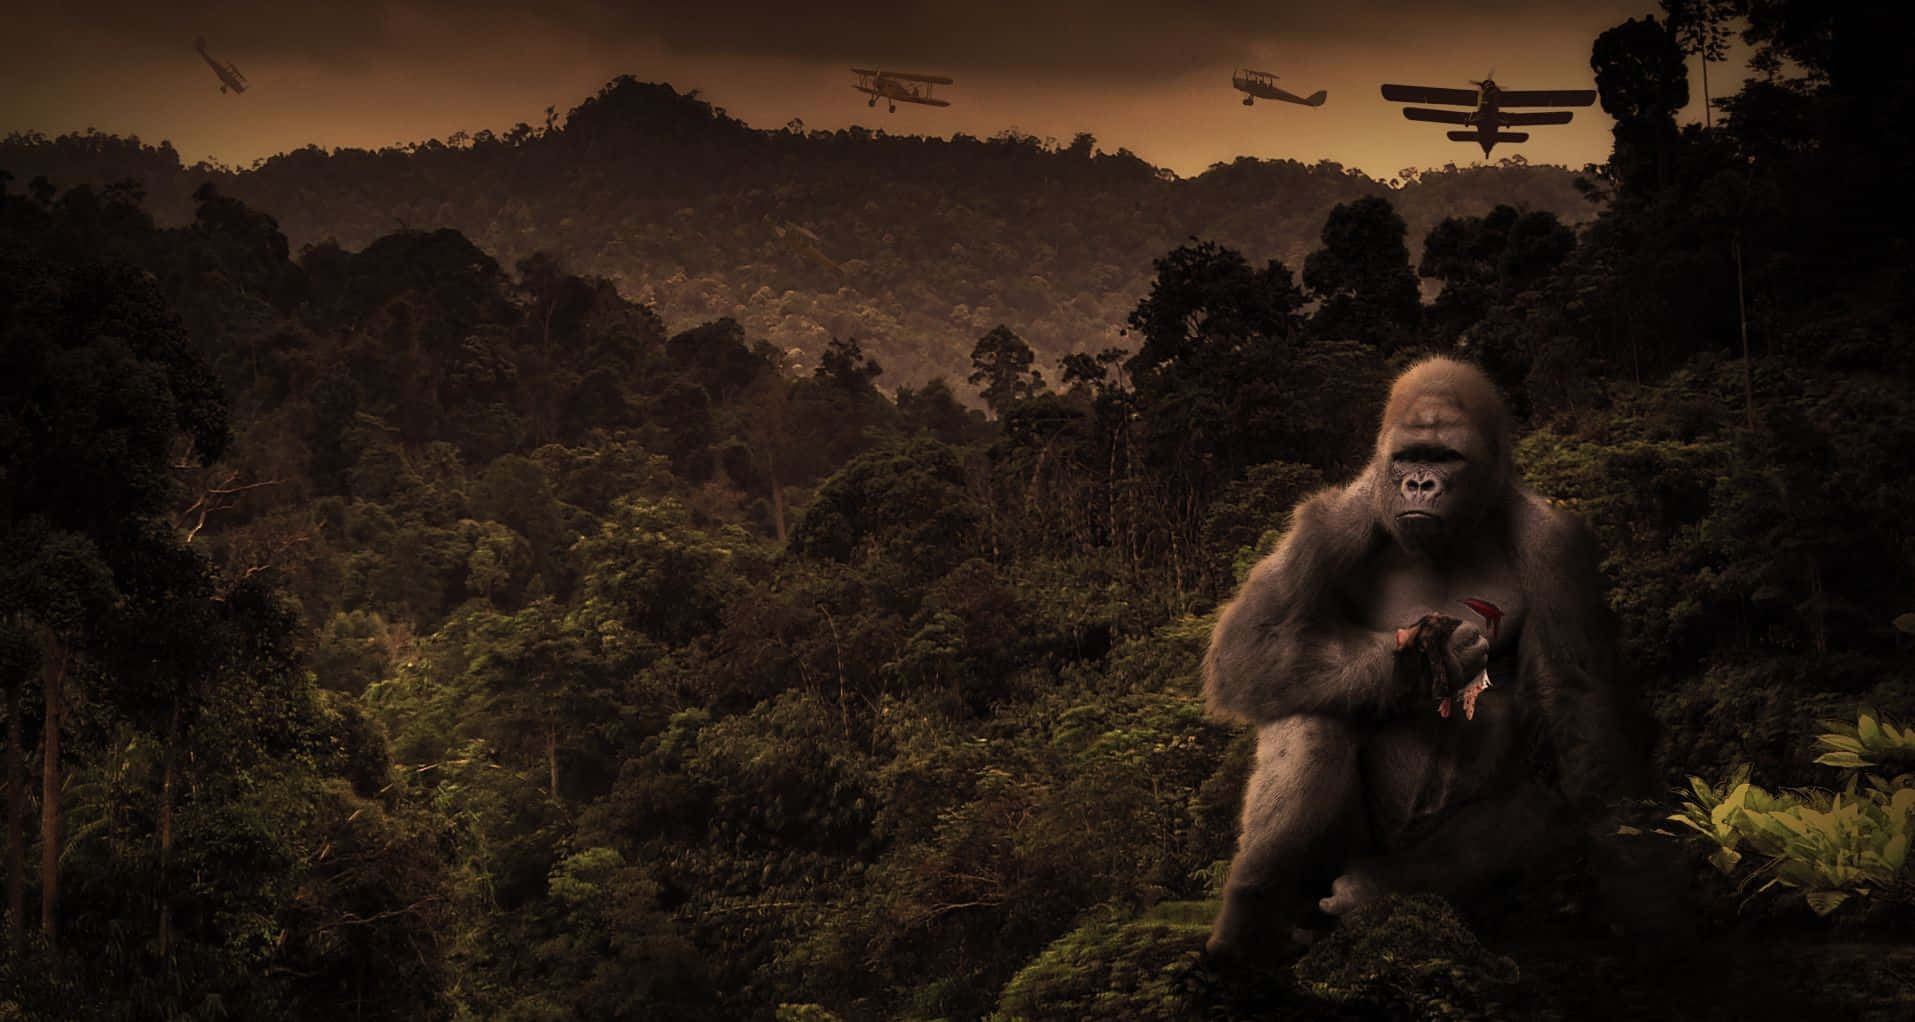 Unagigantesca Gorilla In Bianco E Nero, King Kong, Sovrasta Un'umanità Spaventata Dall'alto Di Un Grattacielo.